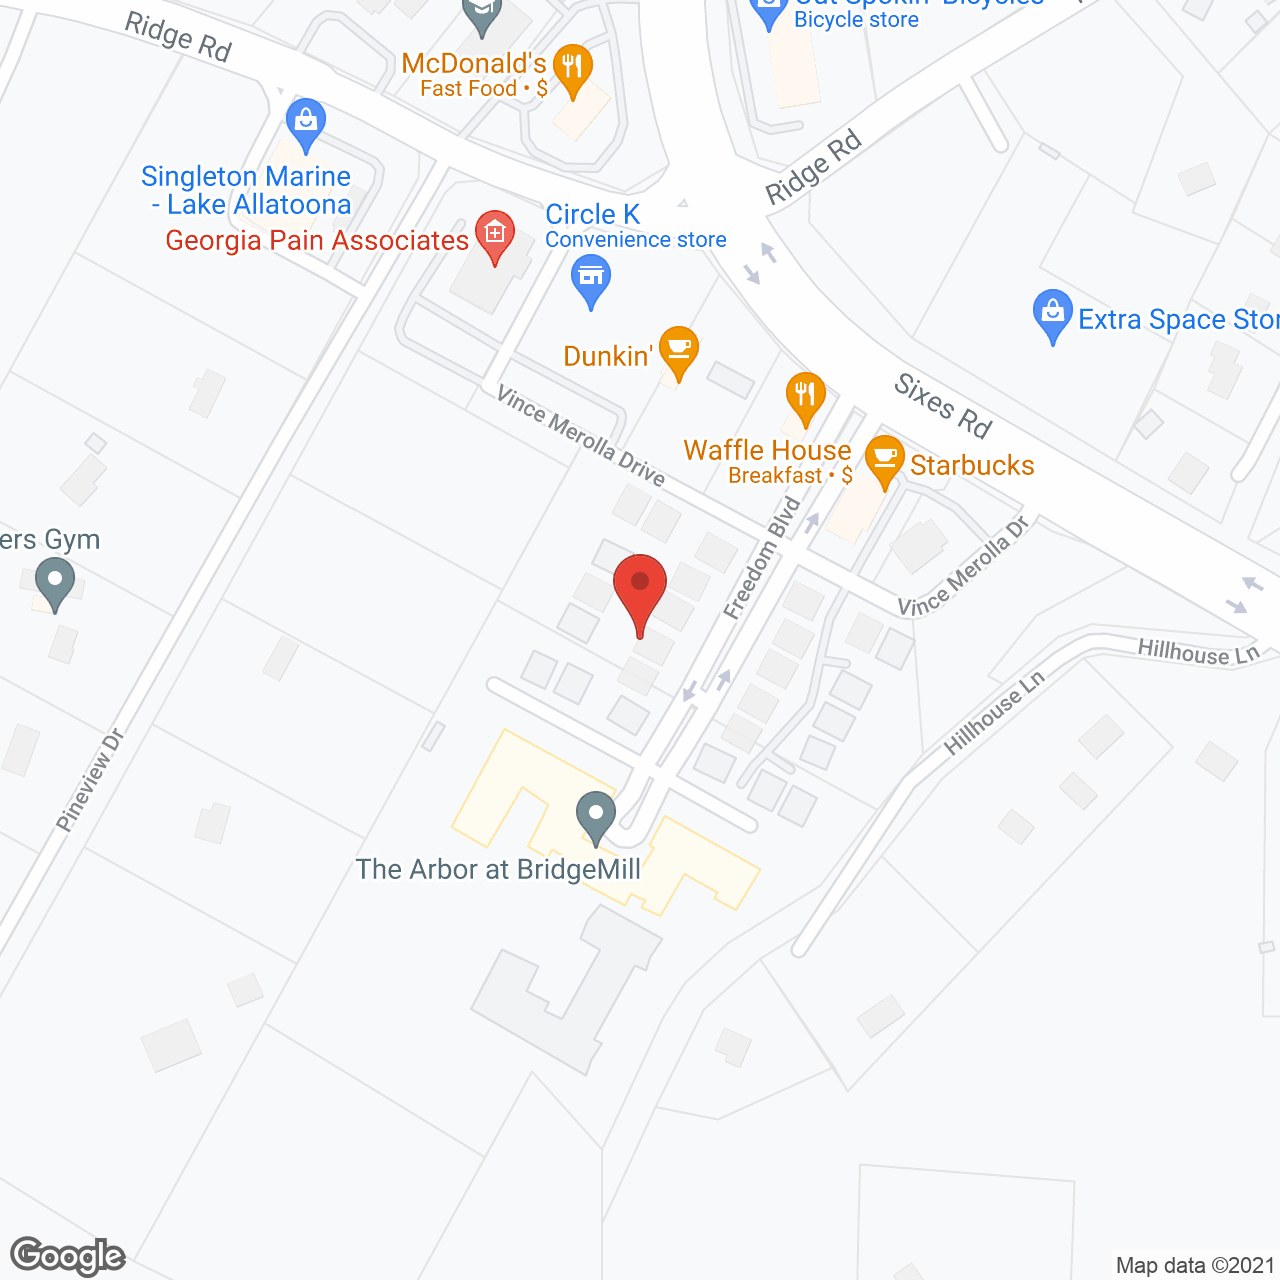 The Arbor at BridgeMill in google map